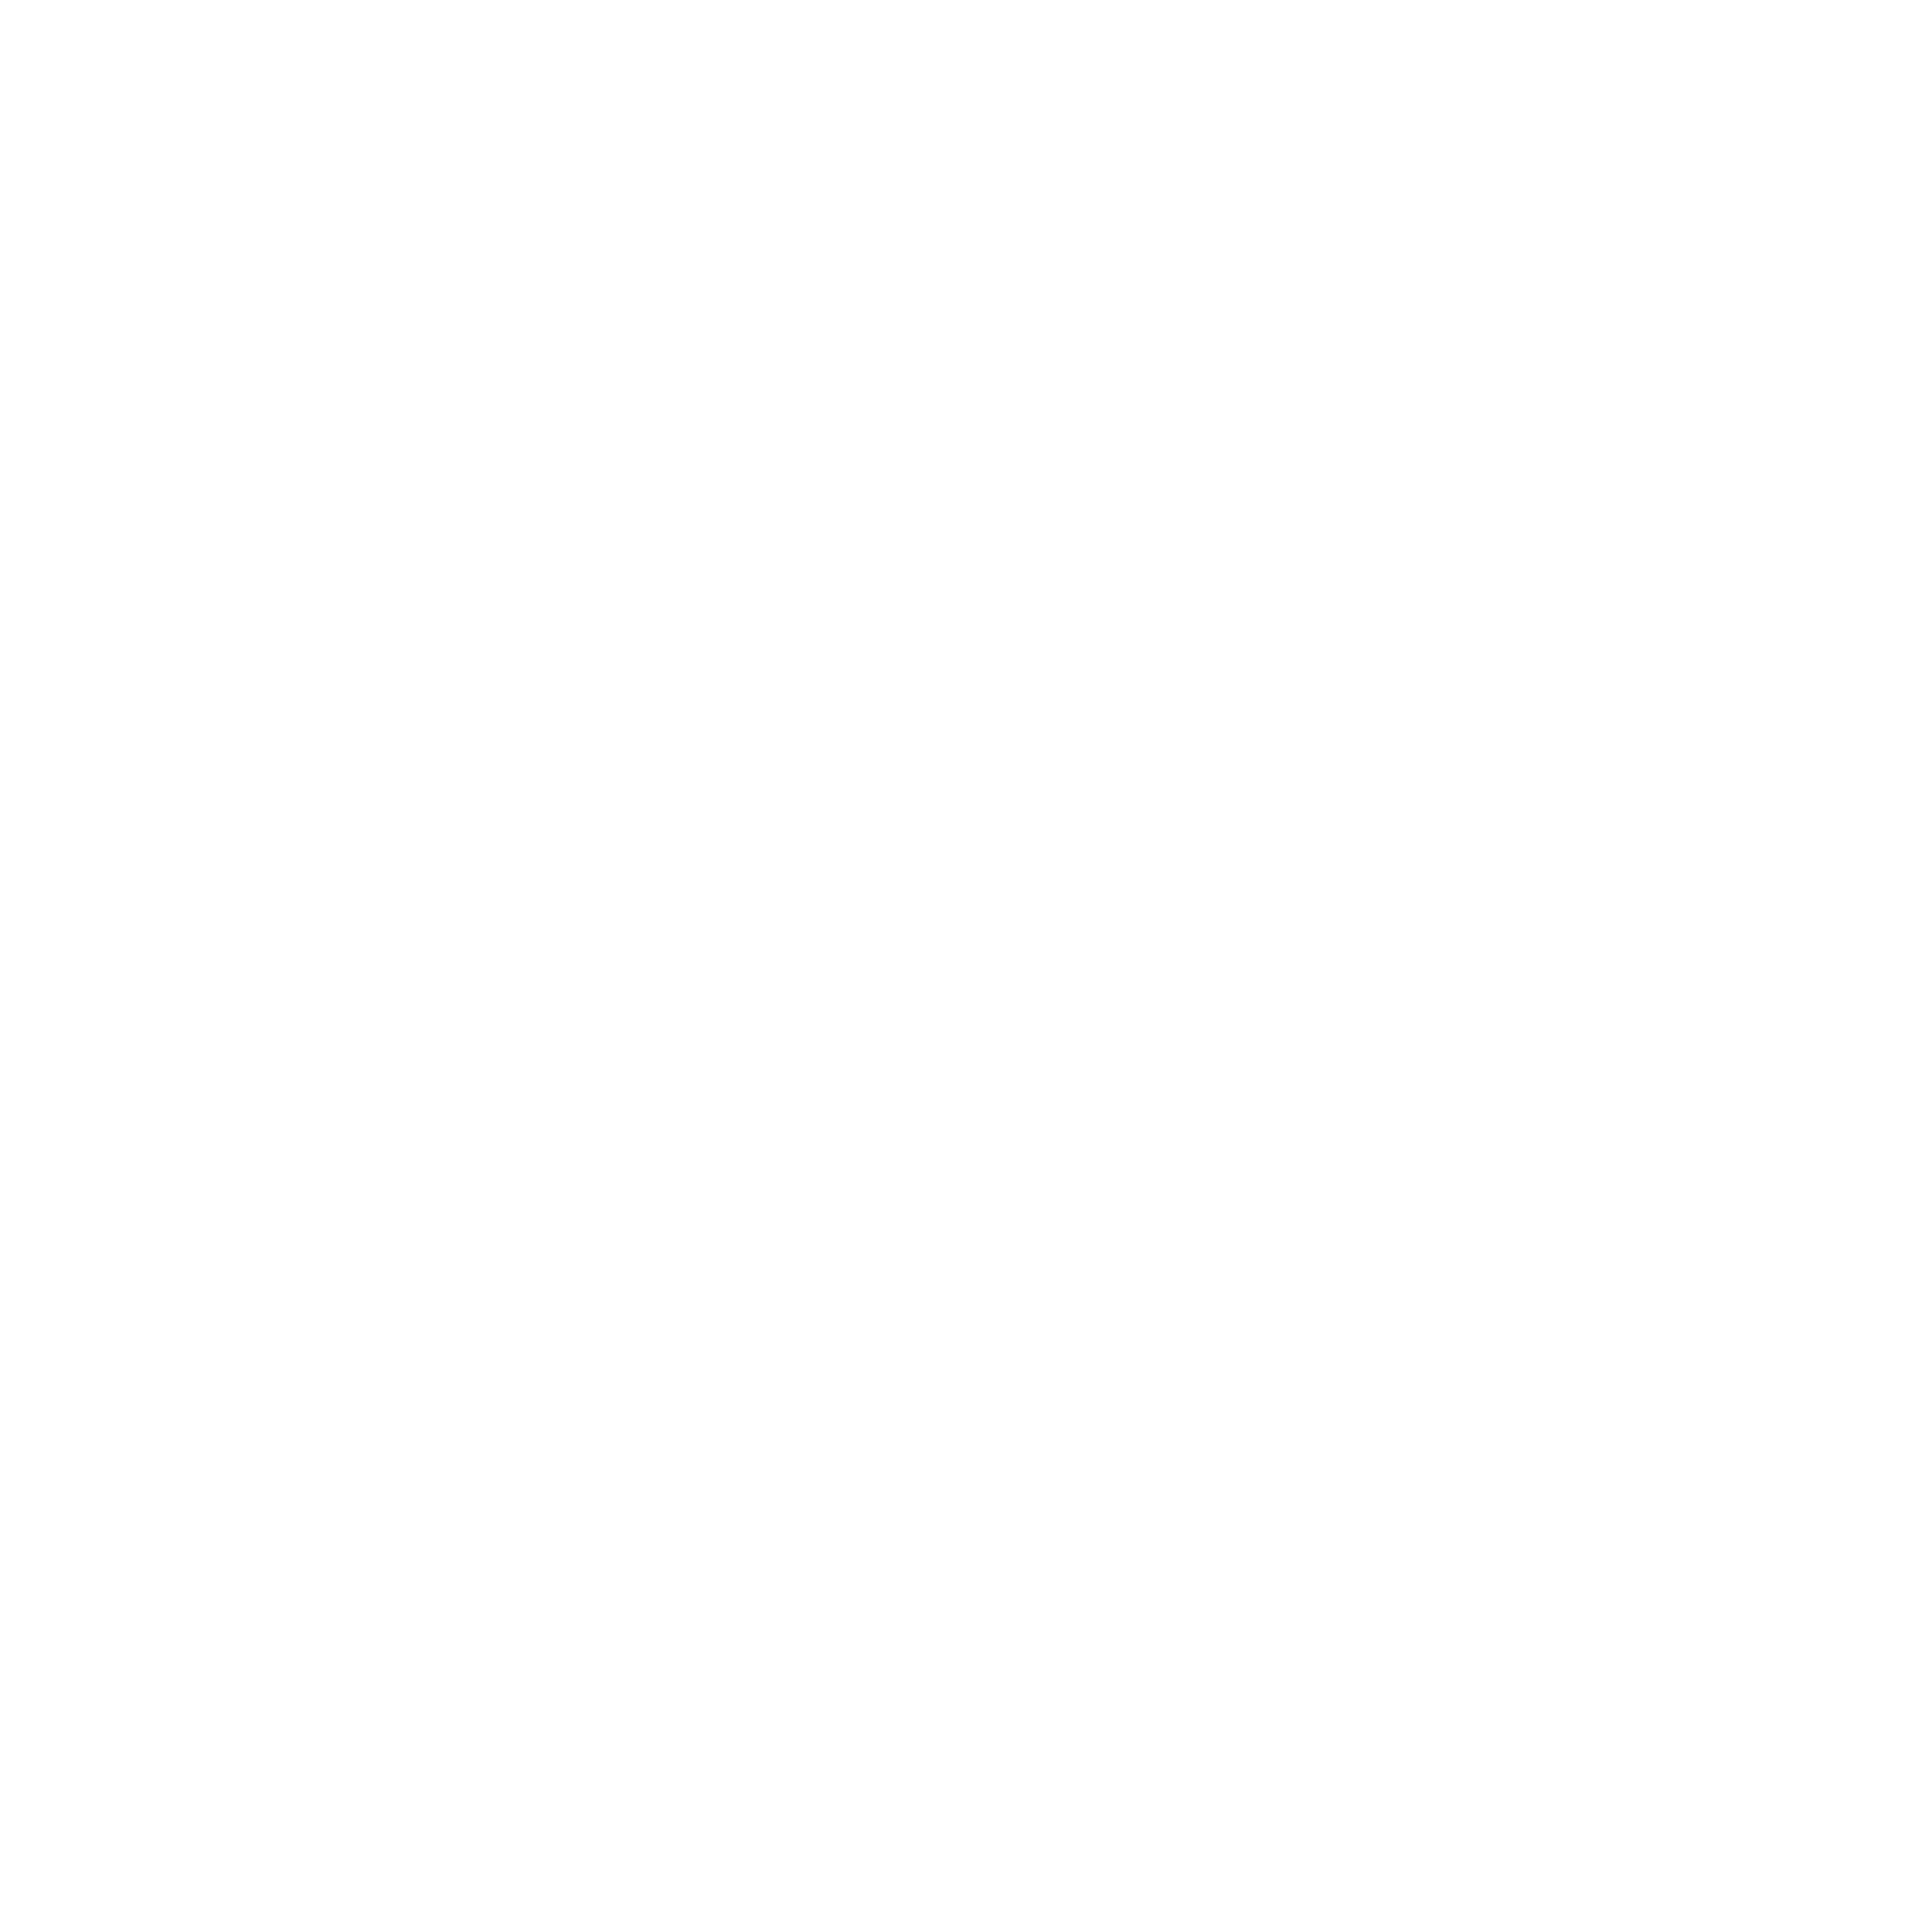 Beam Logo - Beam Authentic